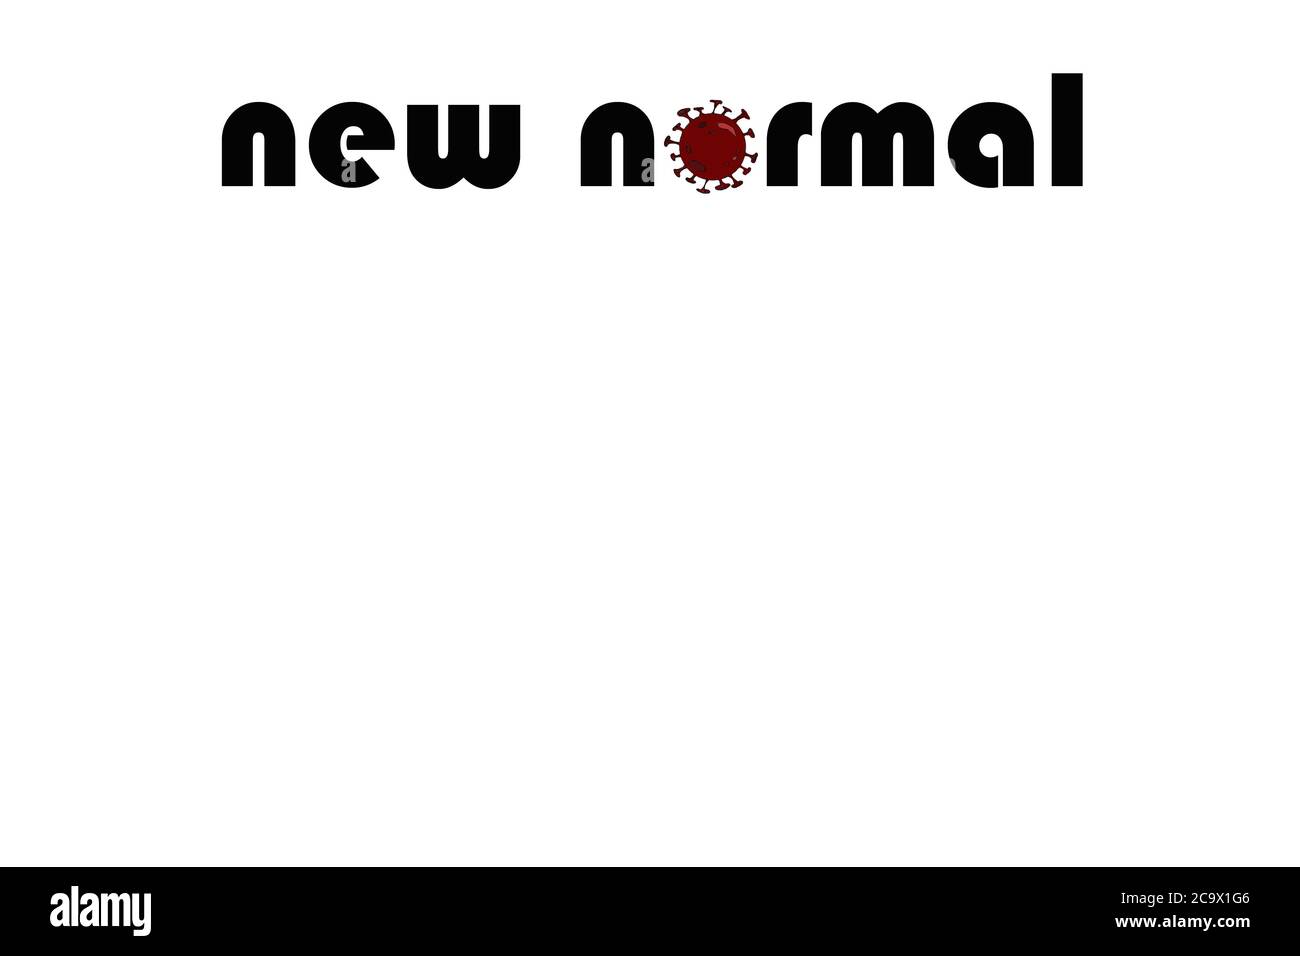 Textgrafik mit Kopfzeile "New Normal", Konzept für Veränderungen, Störungen, Probleme und Lösungen aufgrund der Auswirkungen des Coronavirus und seiner Folgen Stockfoto